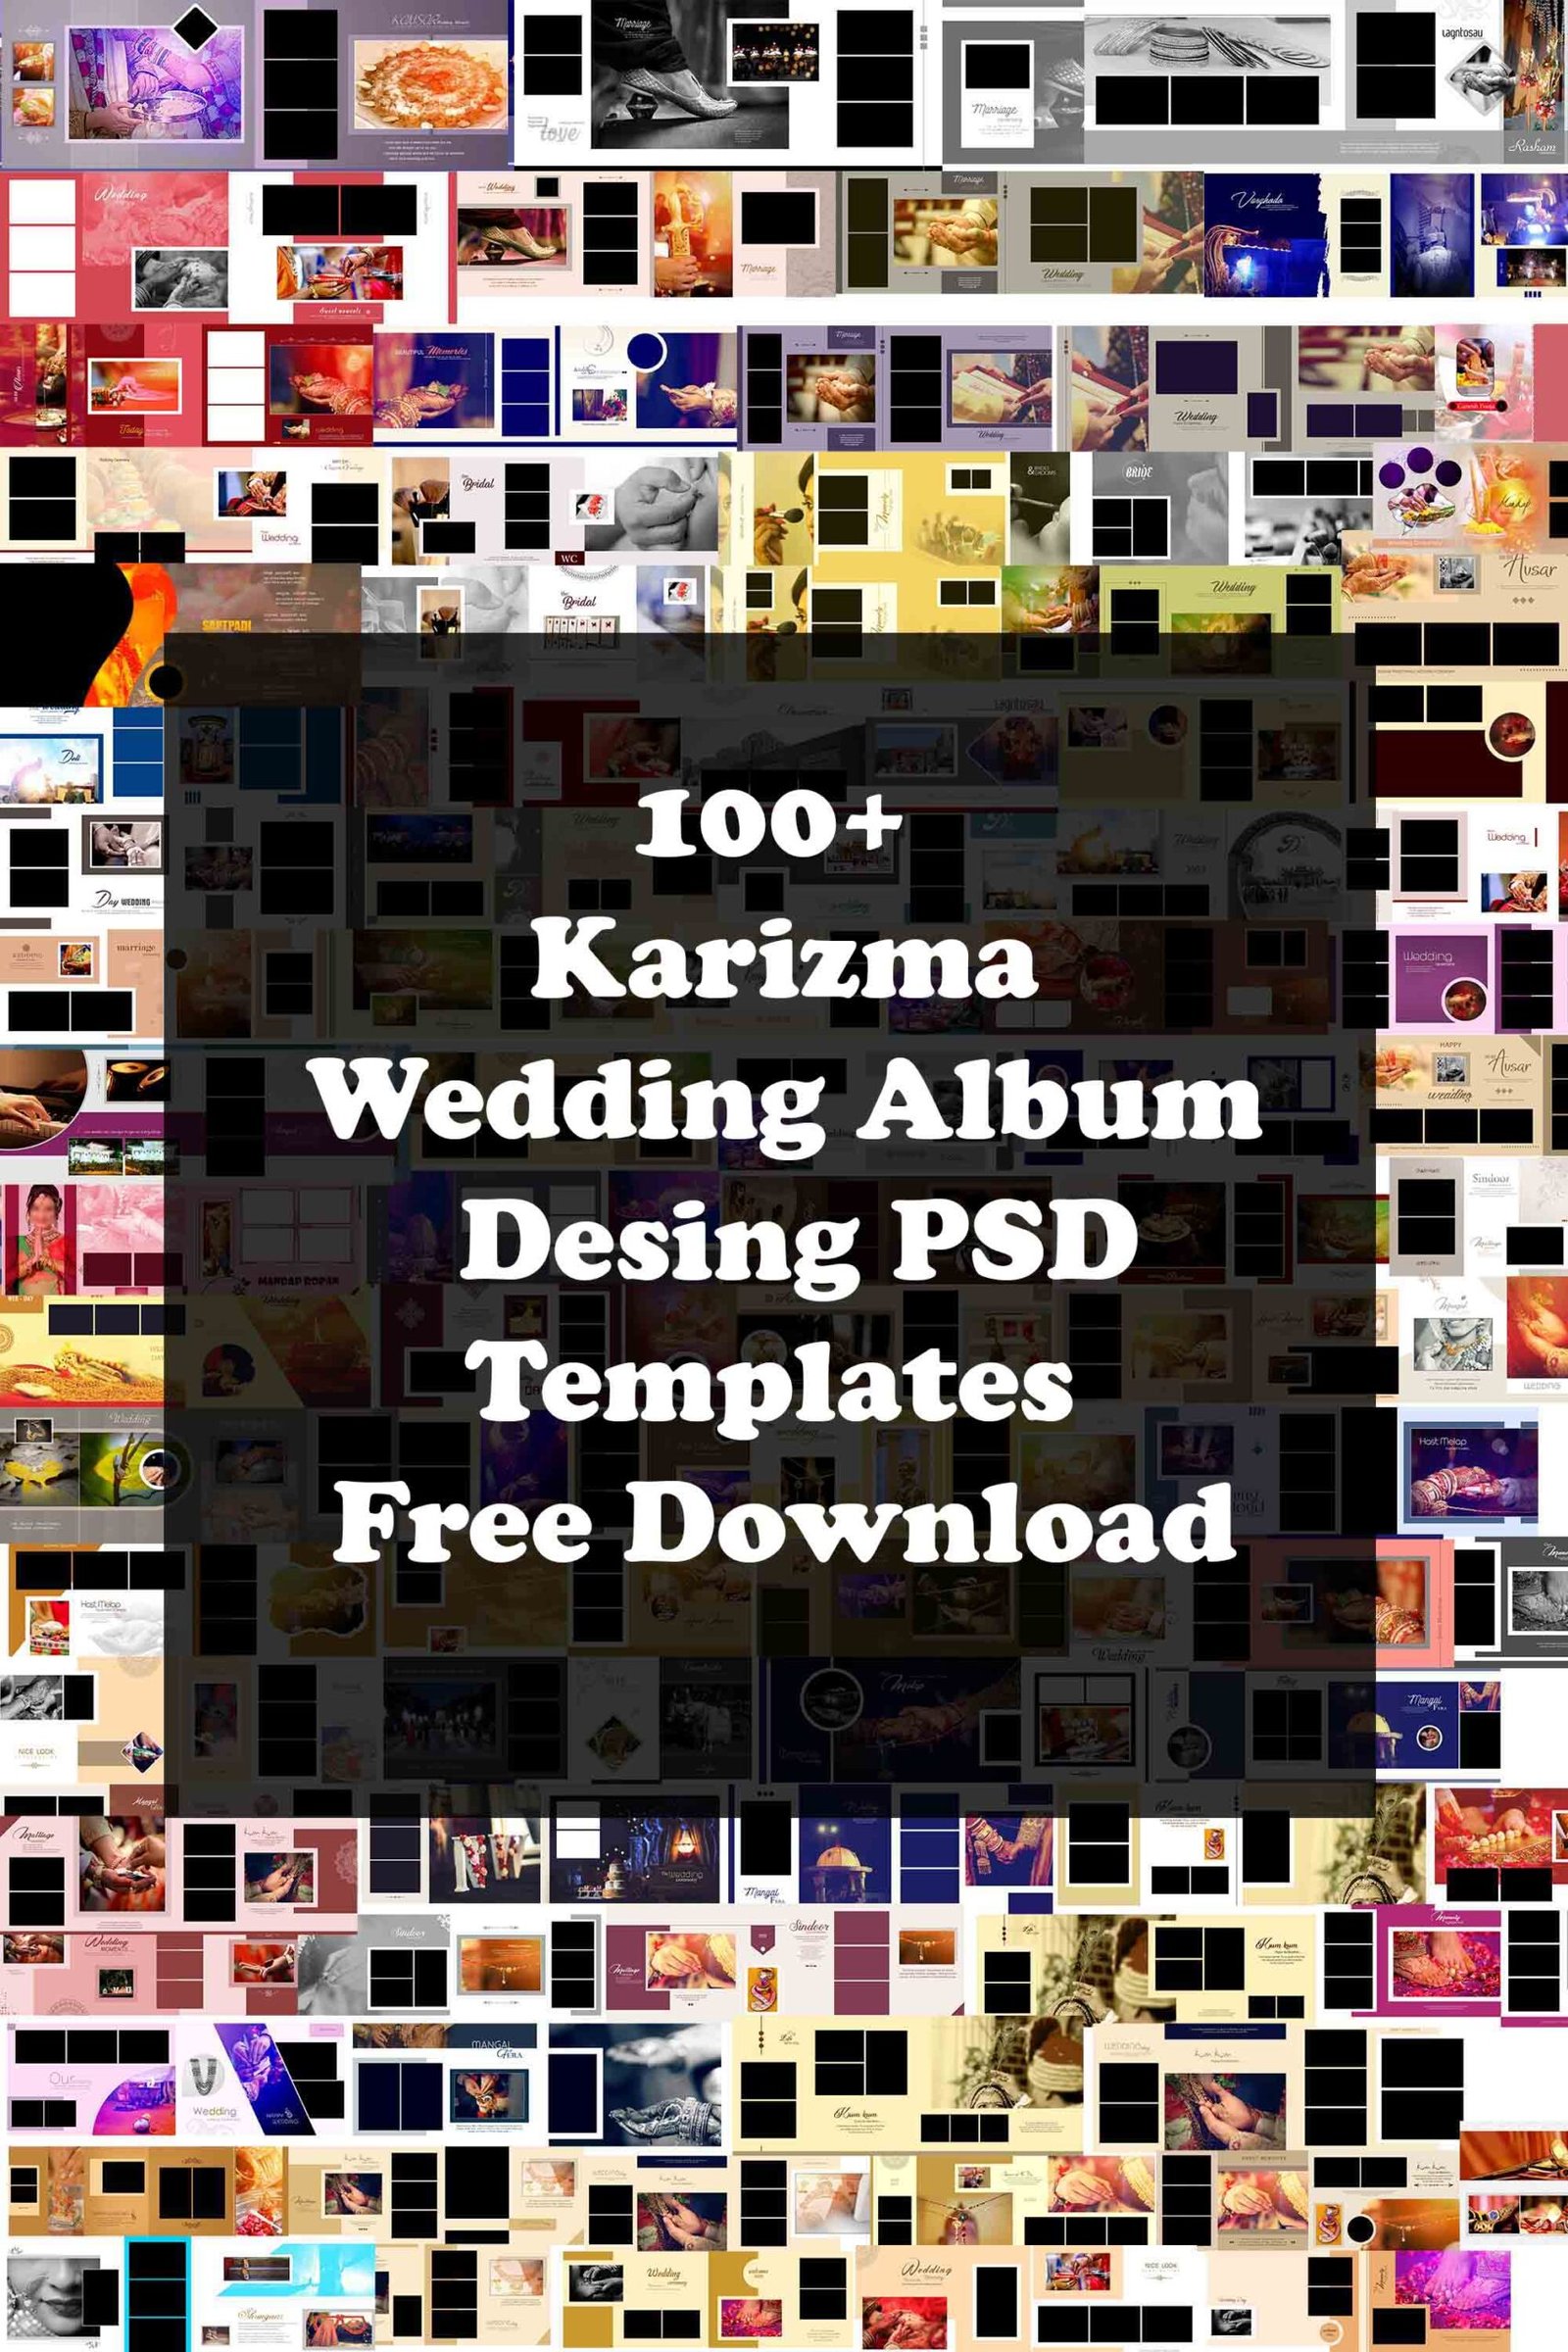 Karizma wedding album collection là một bộ sưu tập đầy đủ, độc đáo và chất lượng tuyệt vời của các mẫu thiết kế album cưới. Với nhiều sự lựa chọn và thiết kế đẹp mắt, các mẫu được chọn lọc kỹ lưỡng từ những chuyên gia thiết kế album tại Karizma sẽ mang lại cho bạn một album cưới đáng nhớ và ấn tượng nhất định.